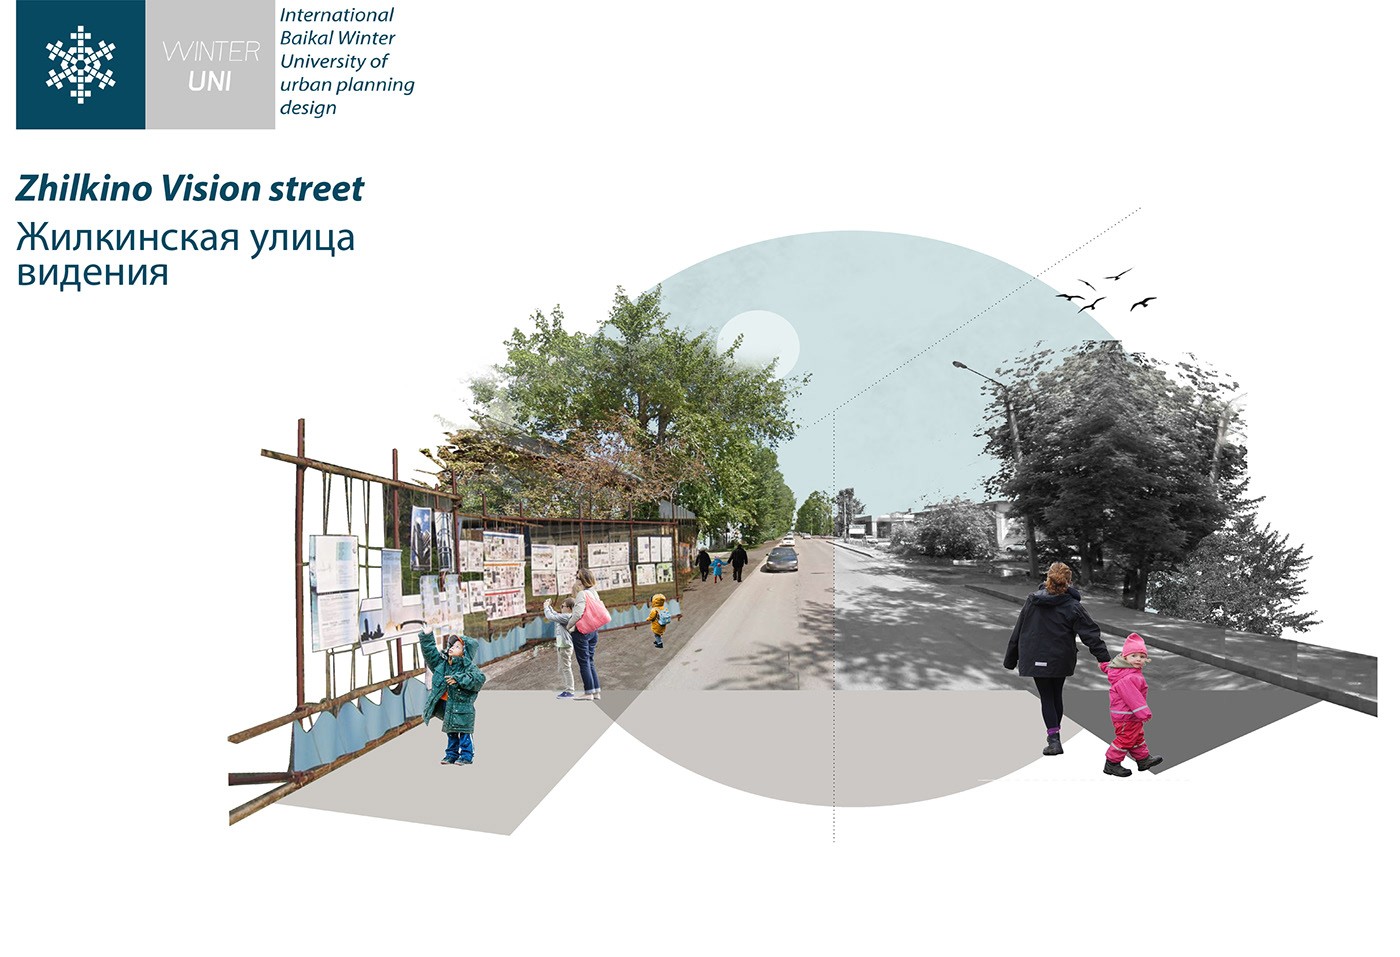 توسعه مجدد مناطق ناراحت کننده (ژیلکینو) |  آزمایشگاه طراحی شهری 5